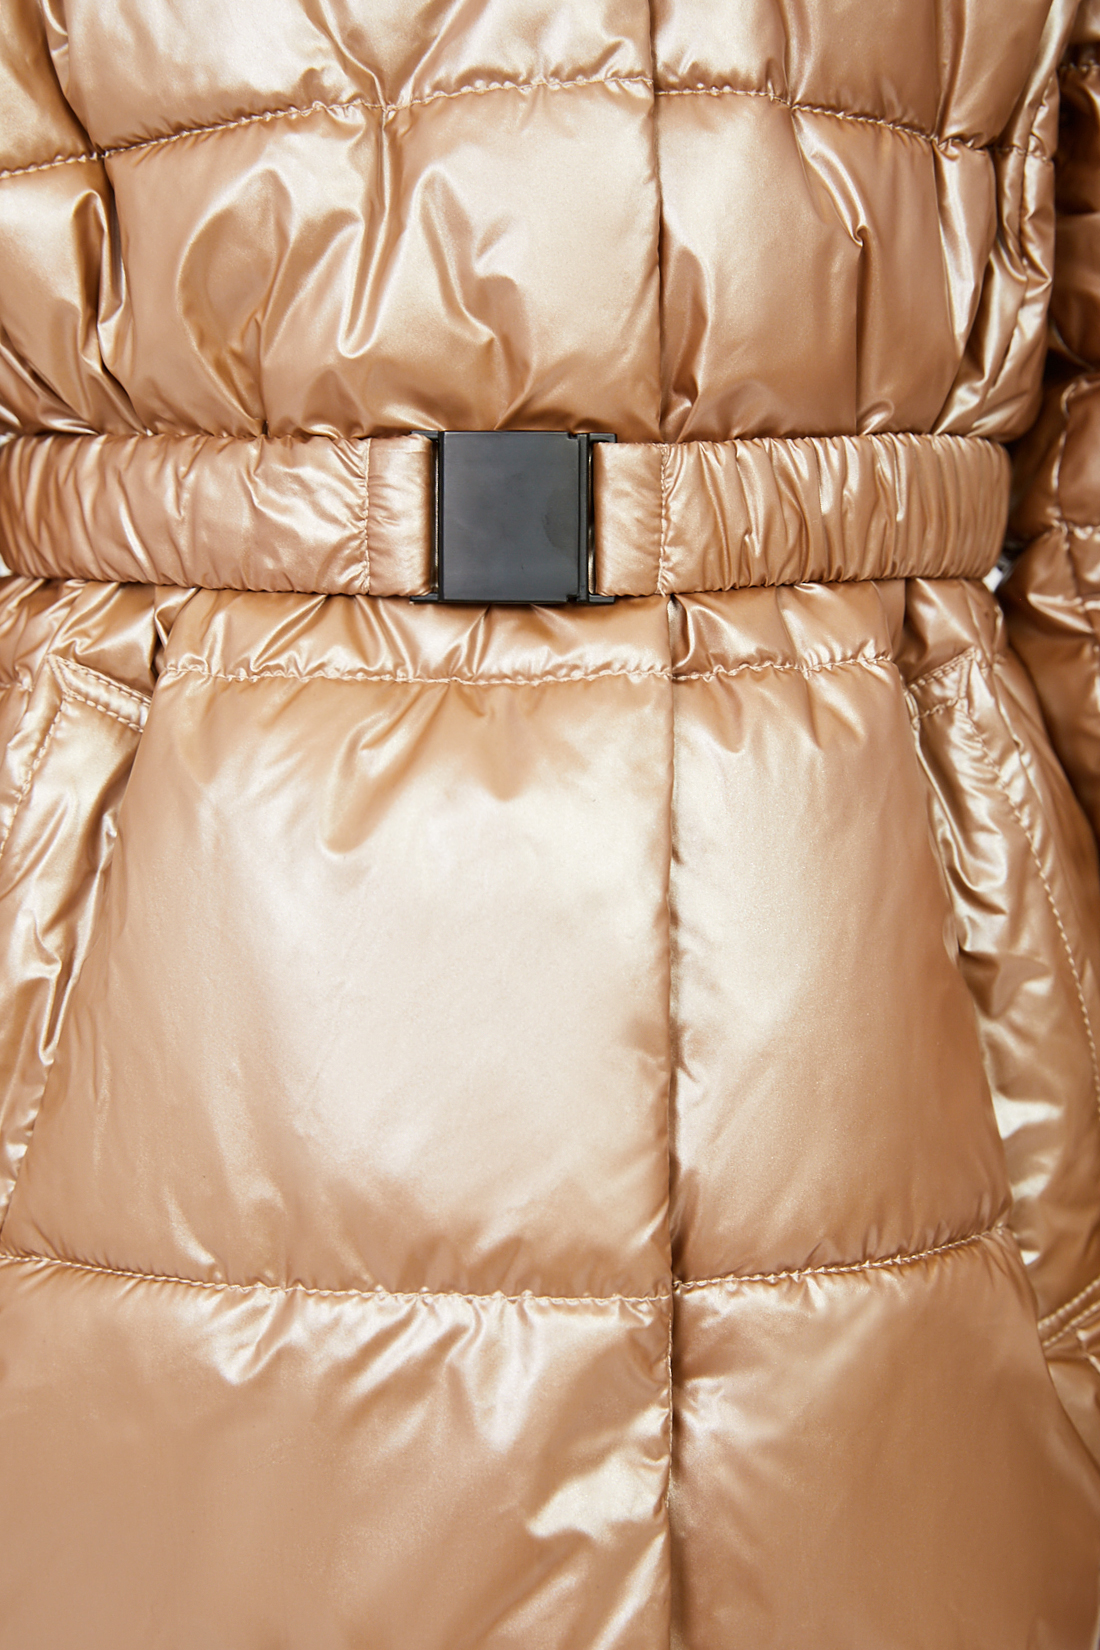 Куртка (Эко пух) (арт. baon BK041807), размер 152-158, цвет бежевый Куртка (Эко пух) (арт. baon BK041807) - фото 3